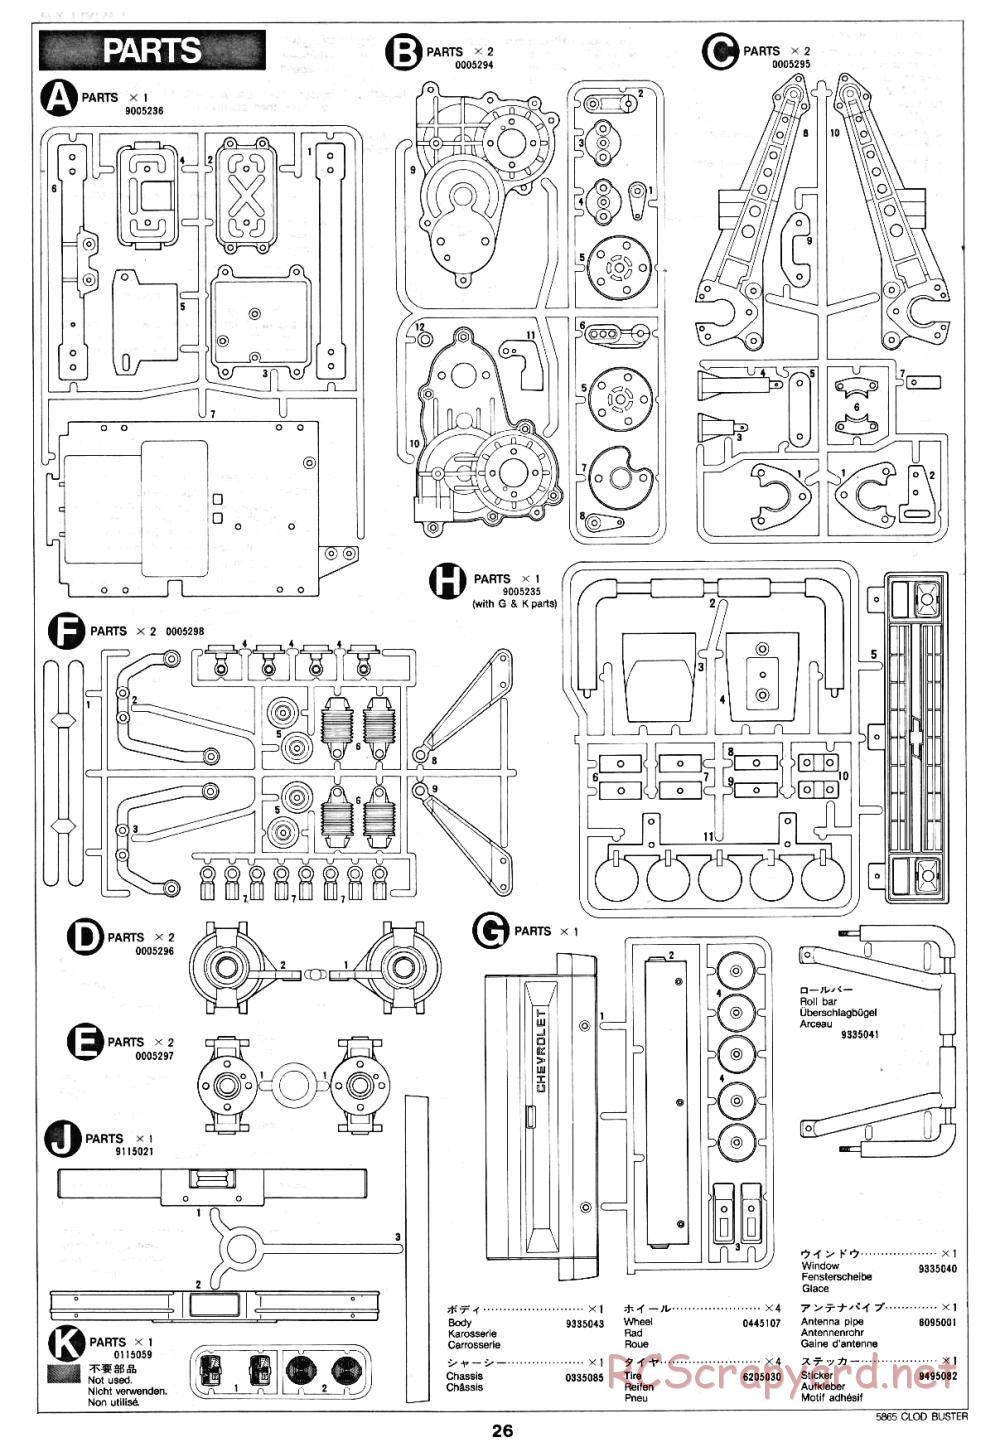 Tamiya - Clod Buster - 58065 - Manual - Page 26